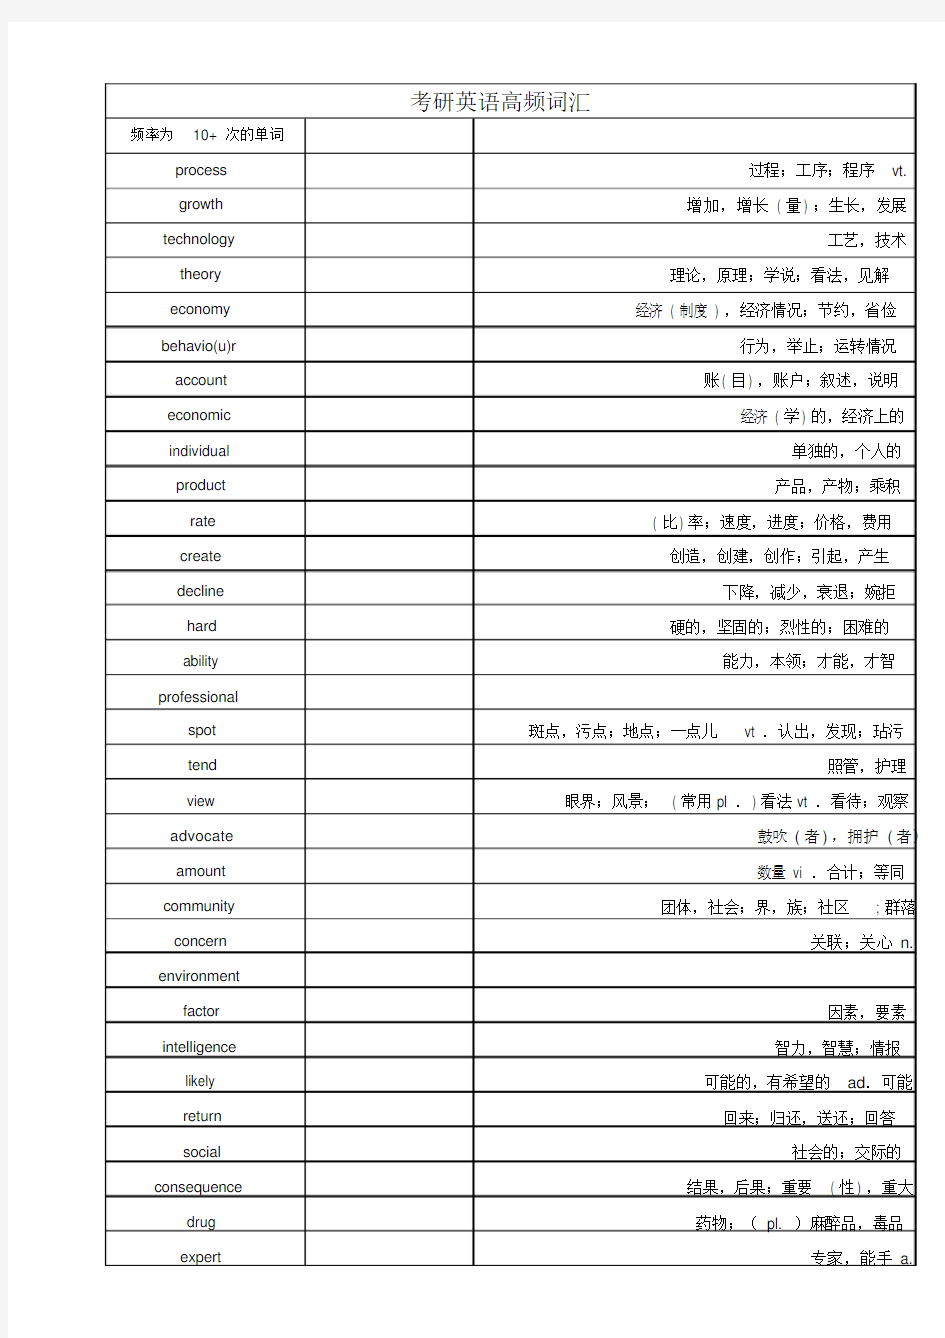 考研英语二高频词汇表-(2)